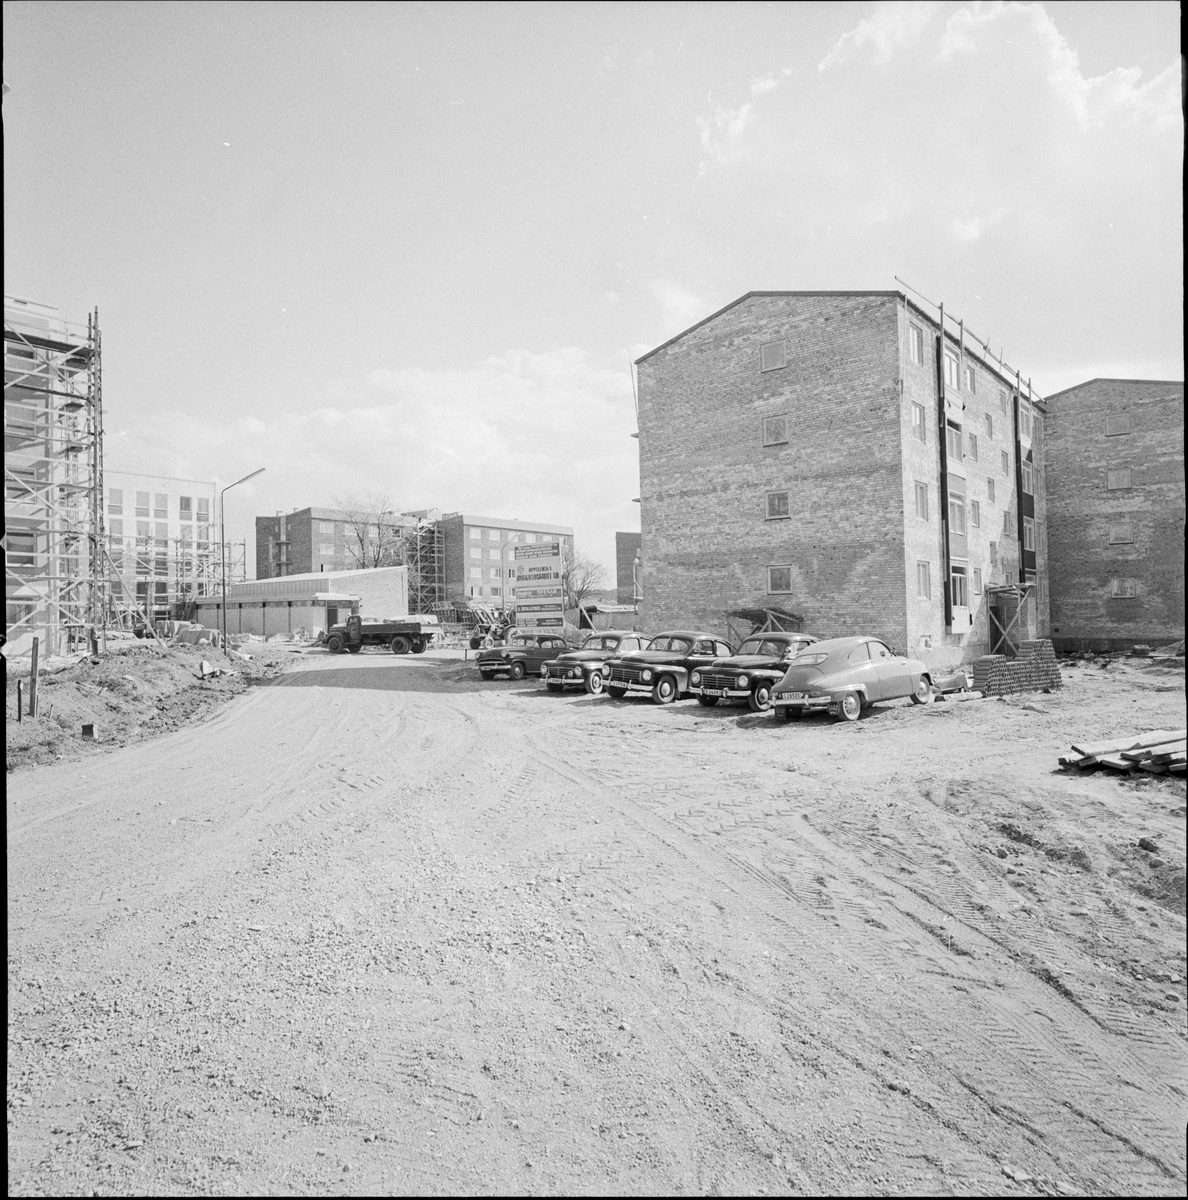 "Stockholmarnas nya studentbostadshus", Uppsala 1960